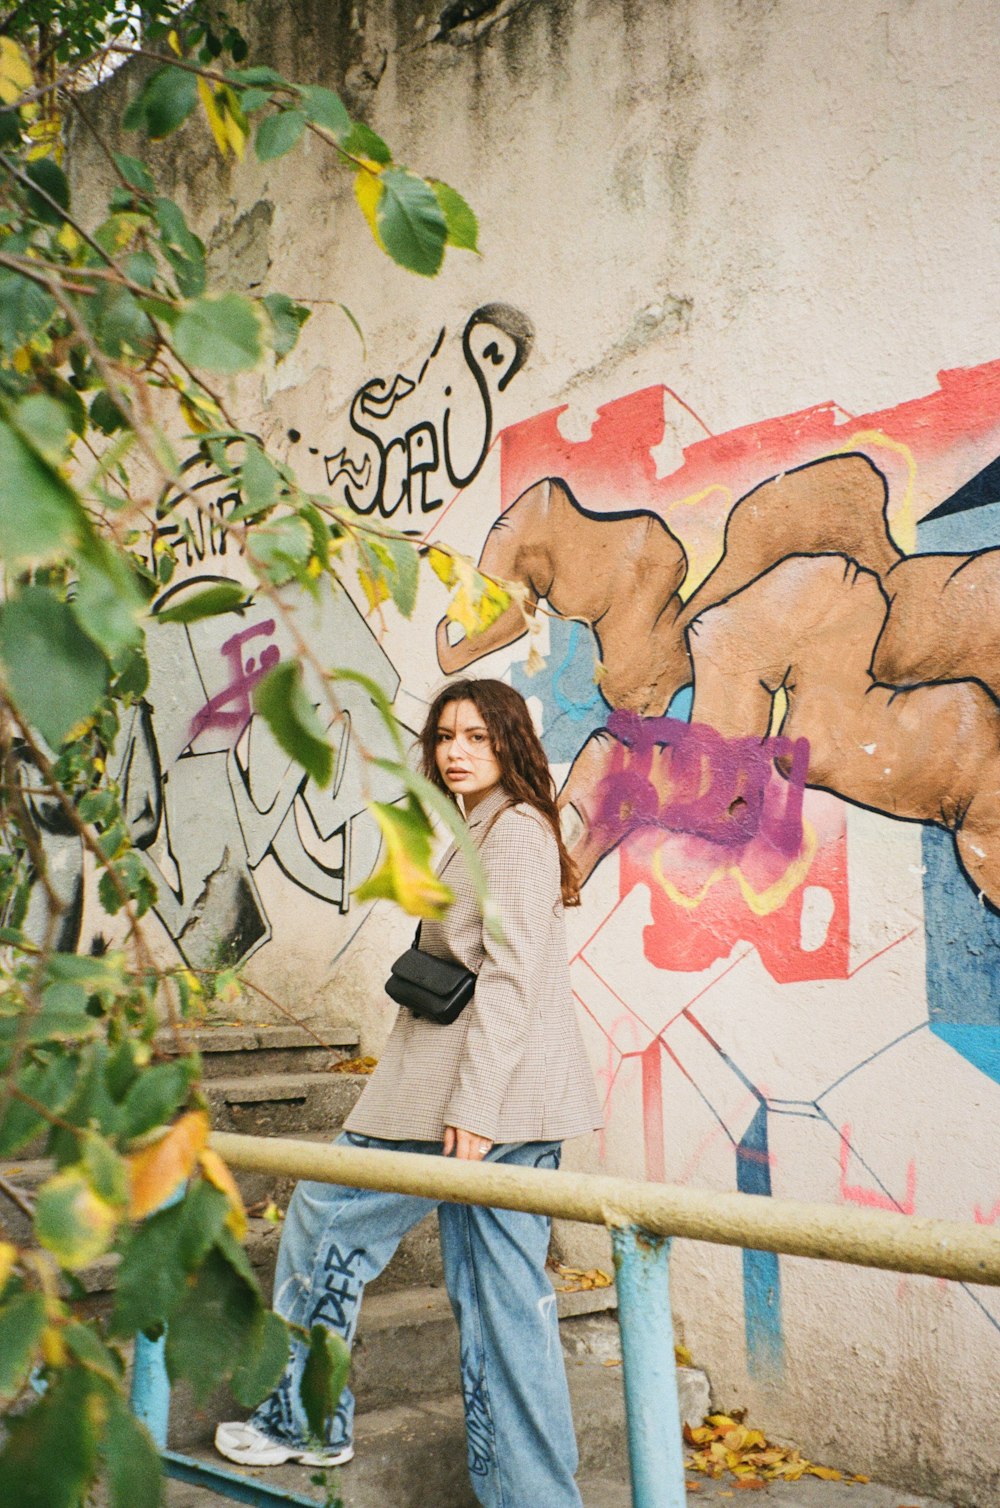 Una persona parada junto a una pared con graffiti